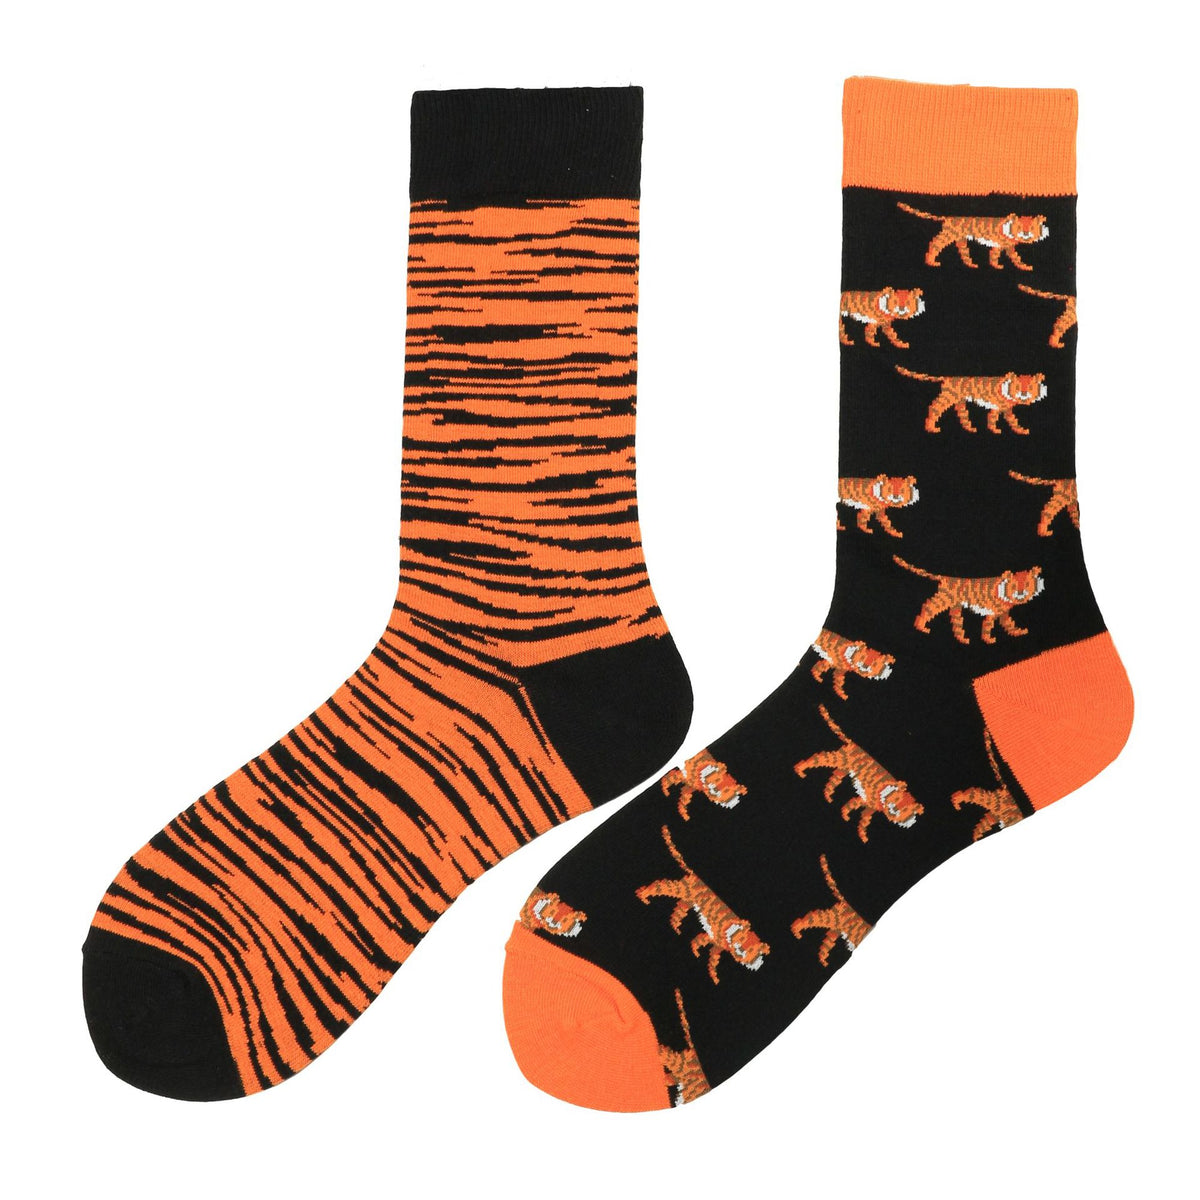 The Tiger's attitude  Funky Socks – Sock Knockers